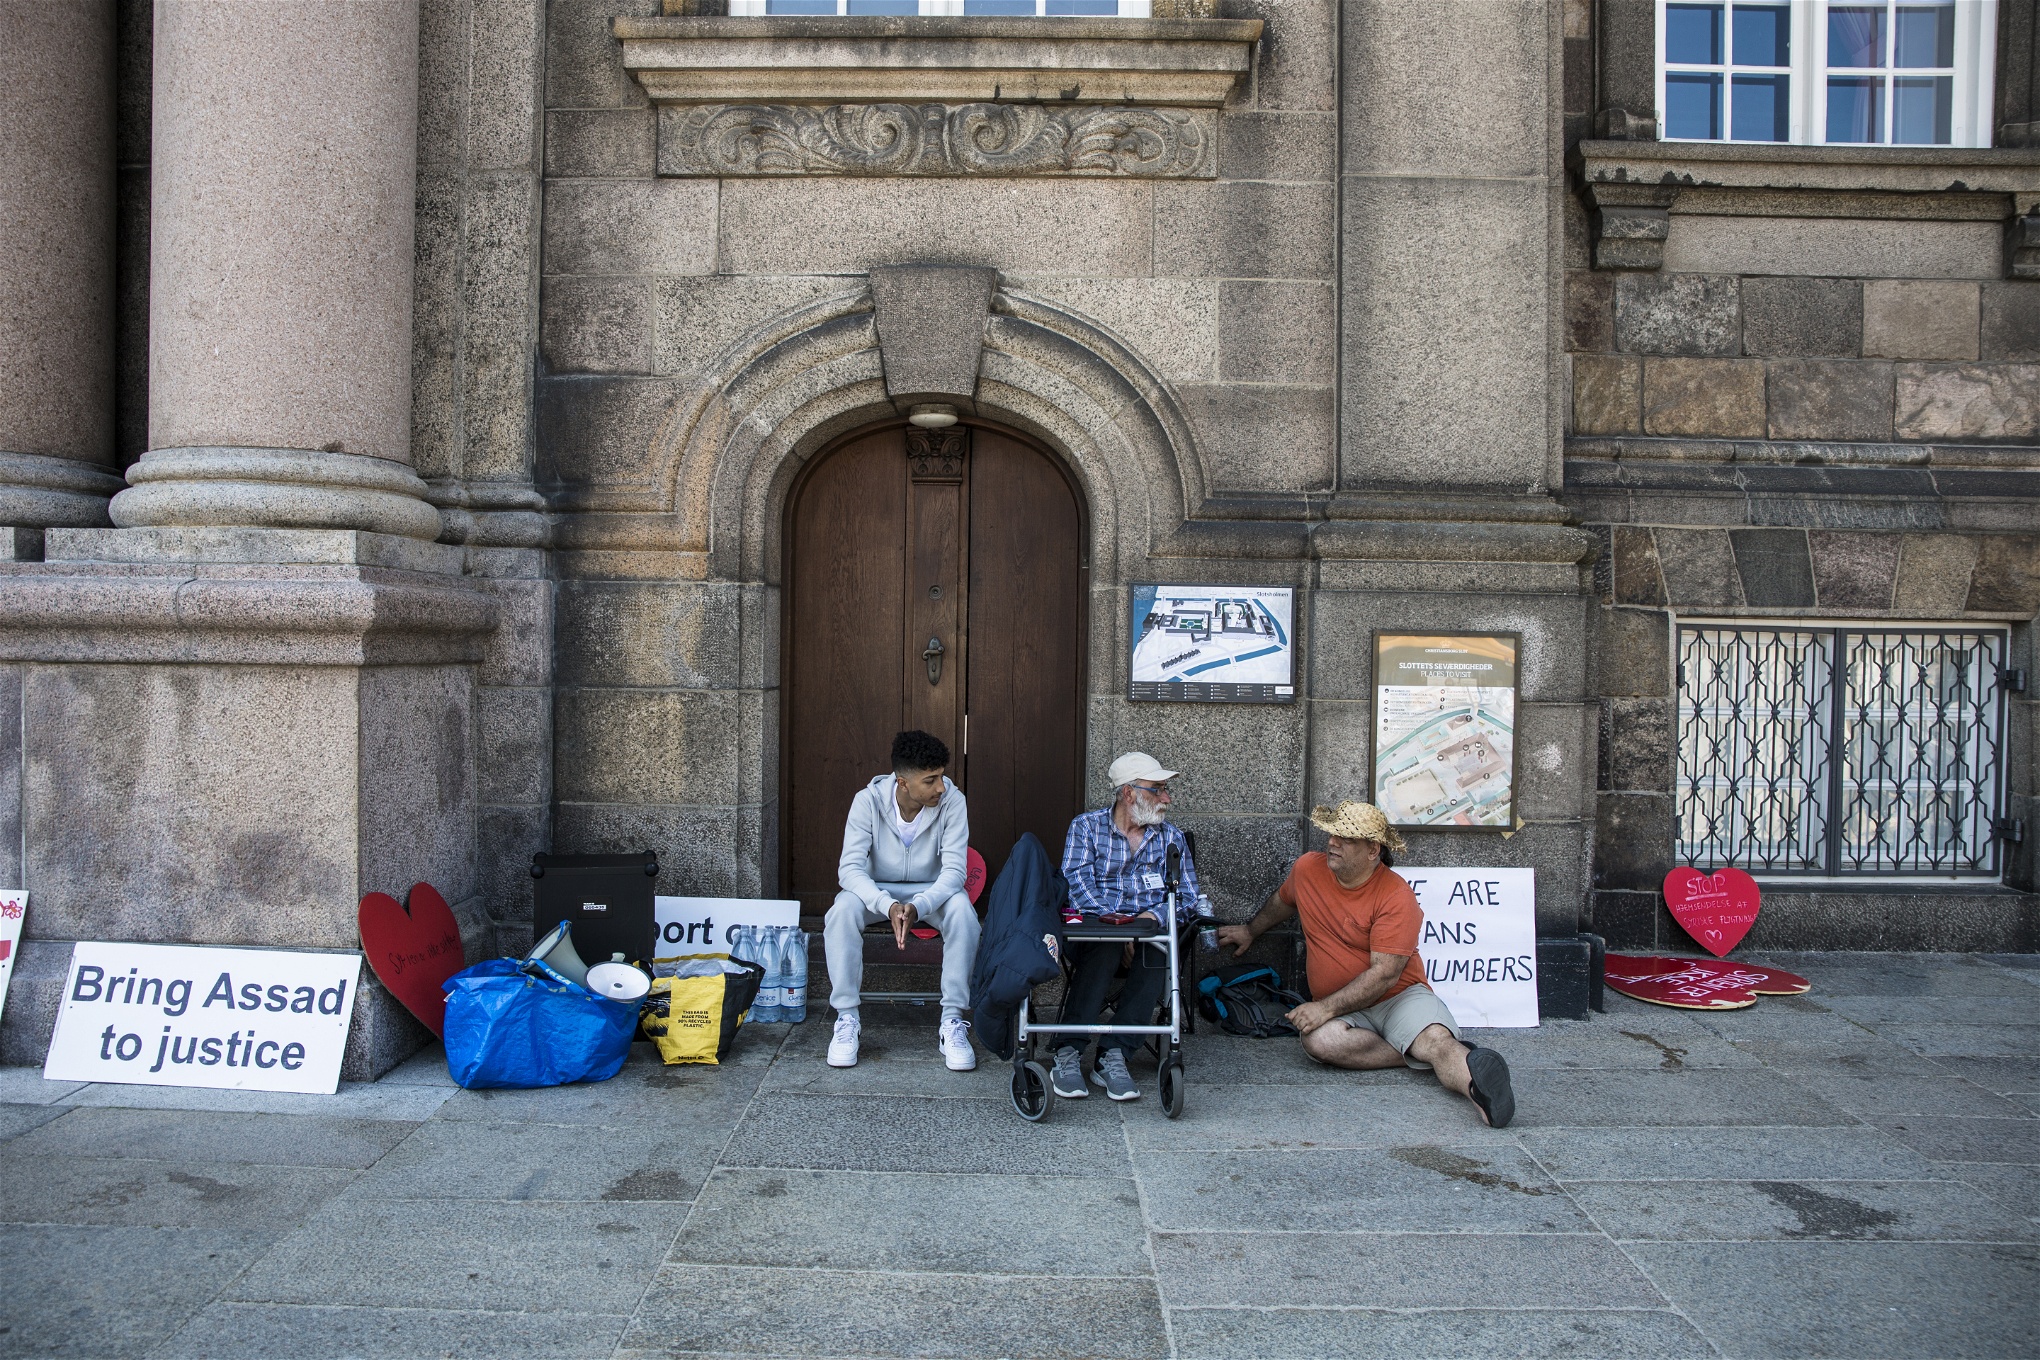 Mohammed Barakat, Abu Jakub och Samir Abdullah Barakat utanför Christiansborg, omgivna av skyltar.